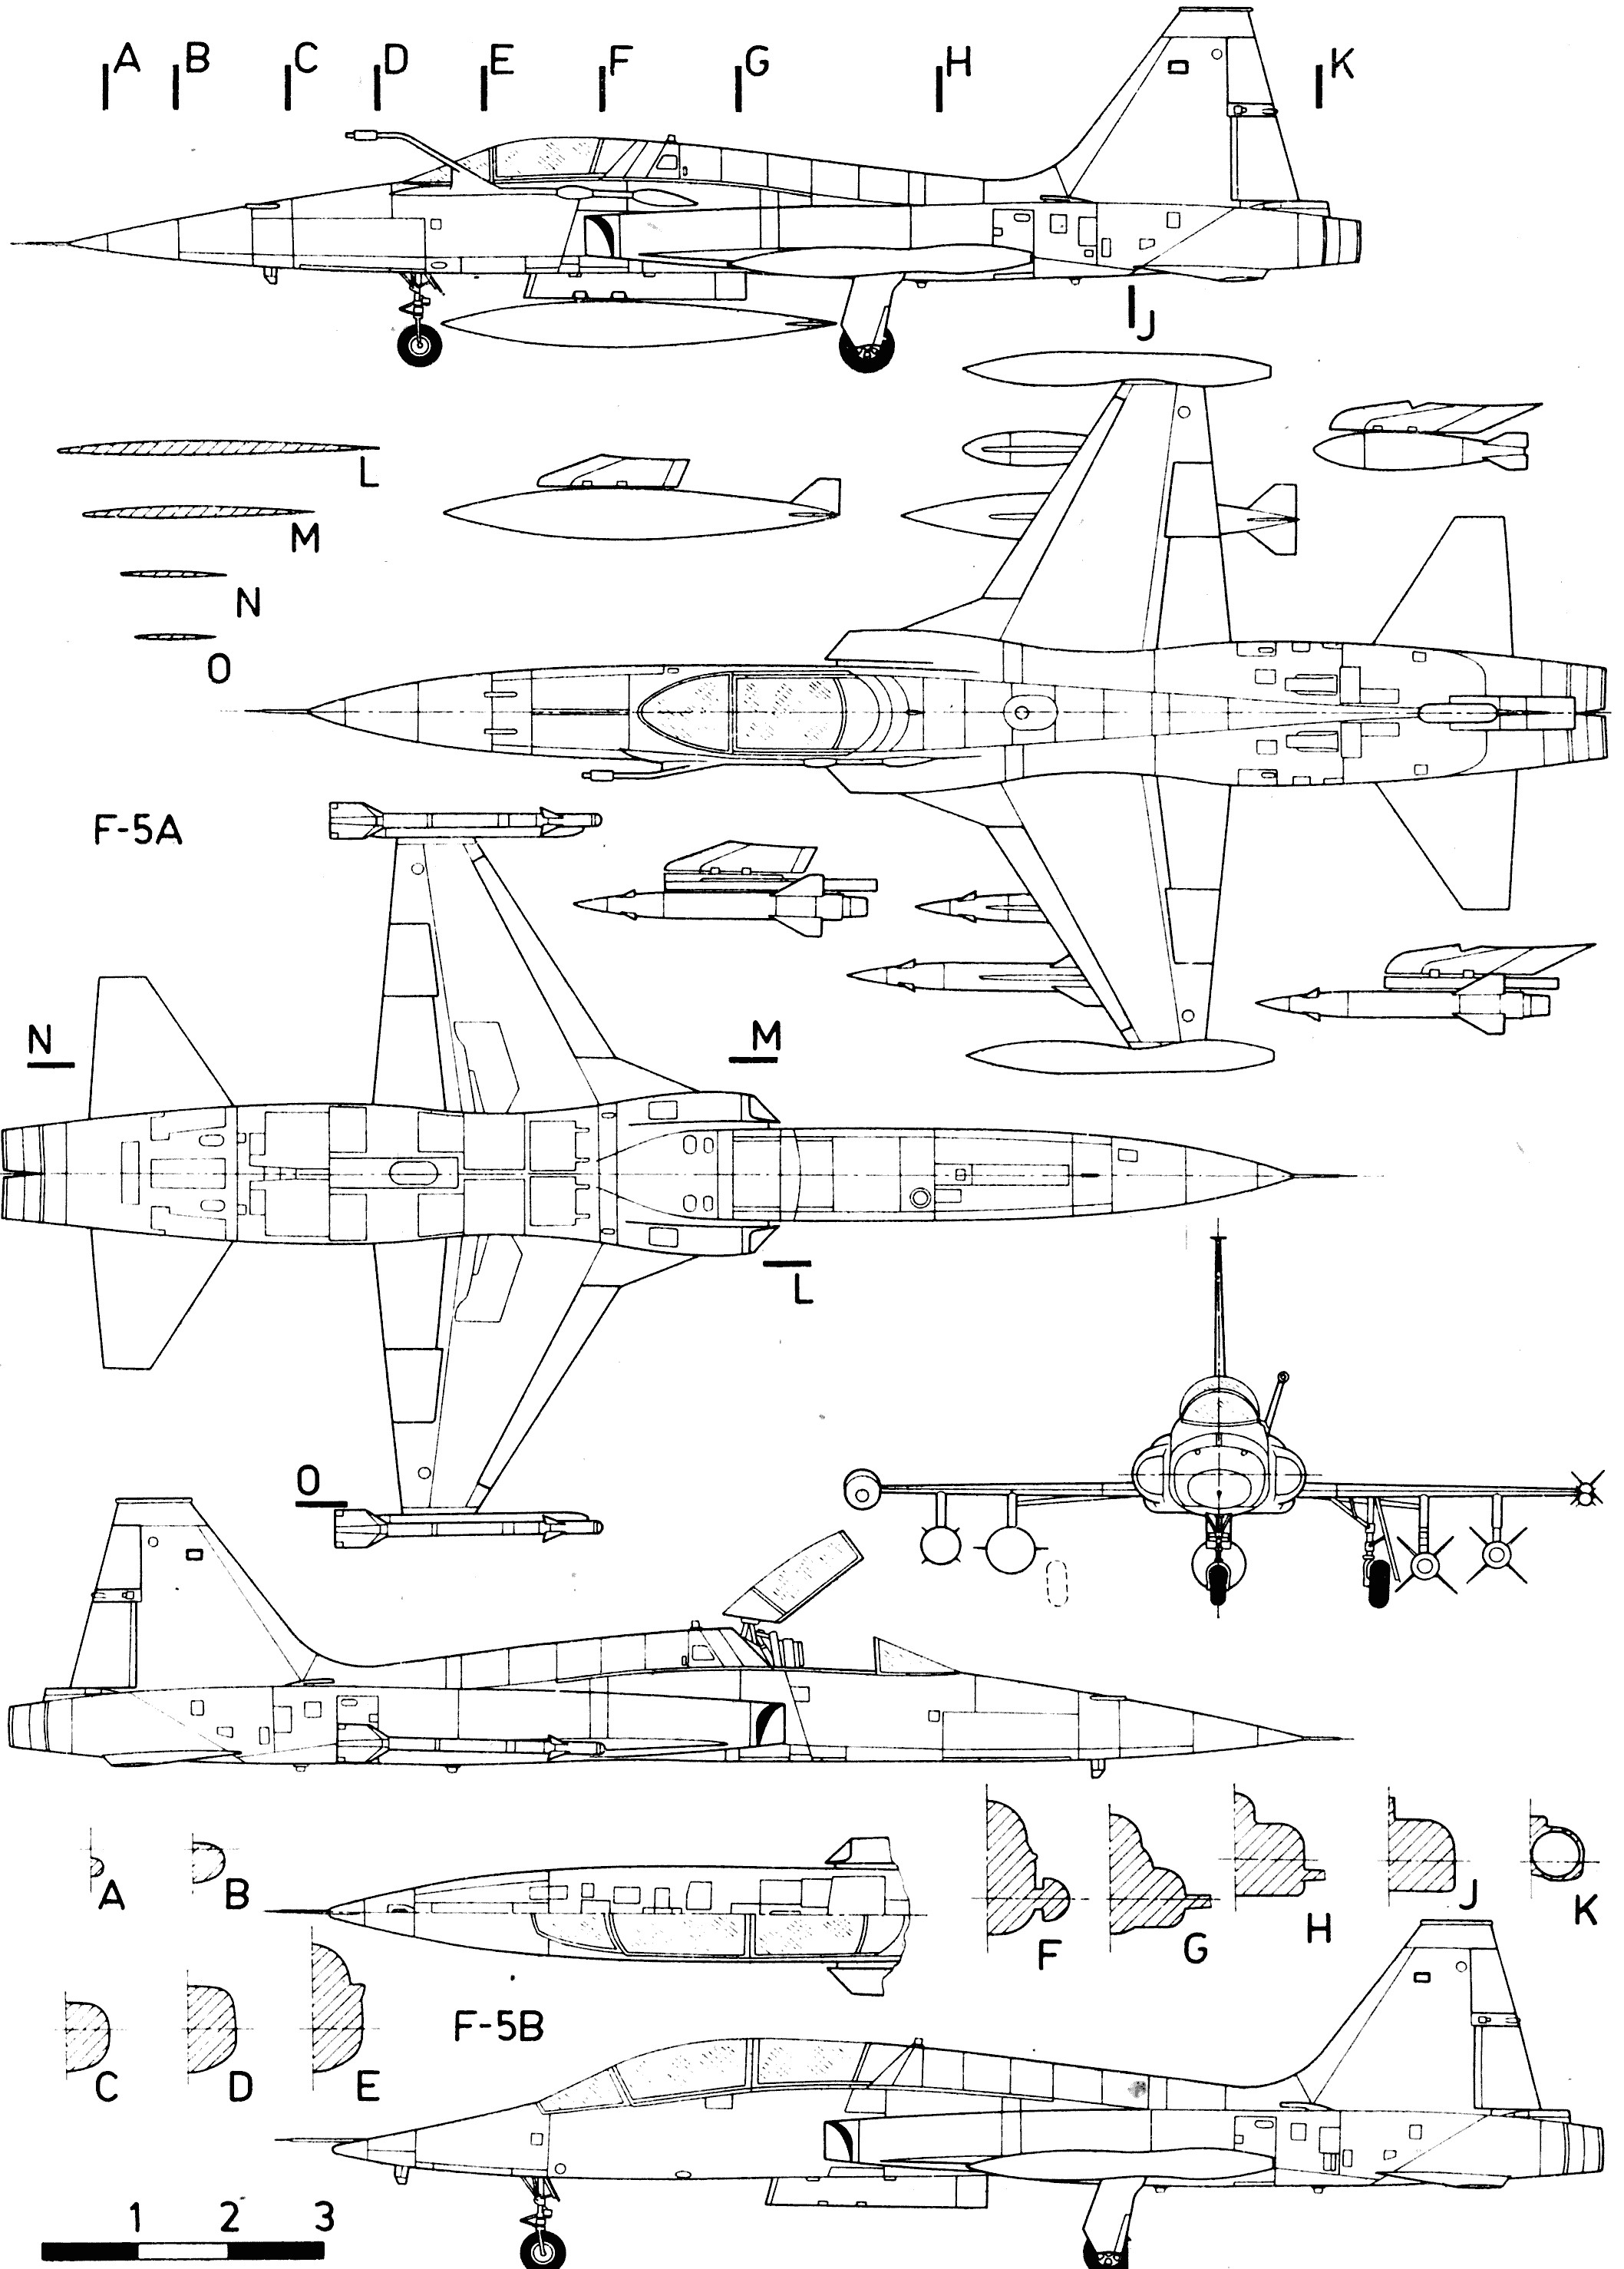 F Drawings Blueprints northrop F 5 Blueprint Aircraft Modern Post 1950 Aircraft